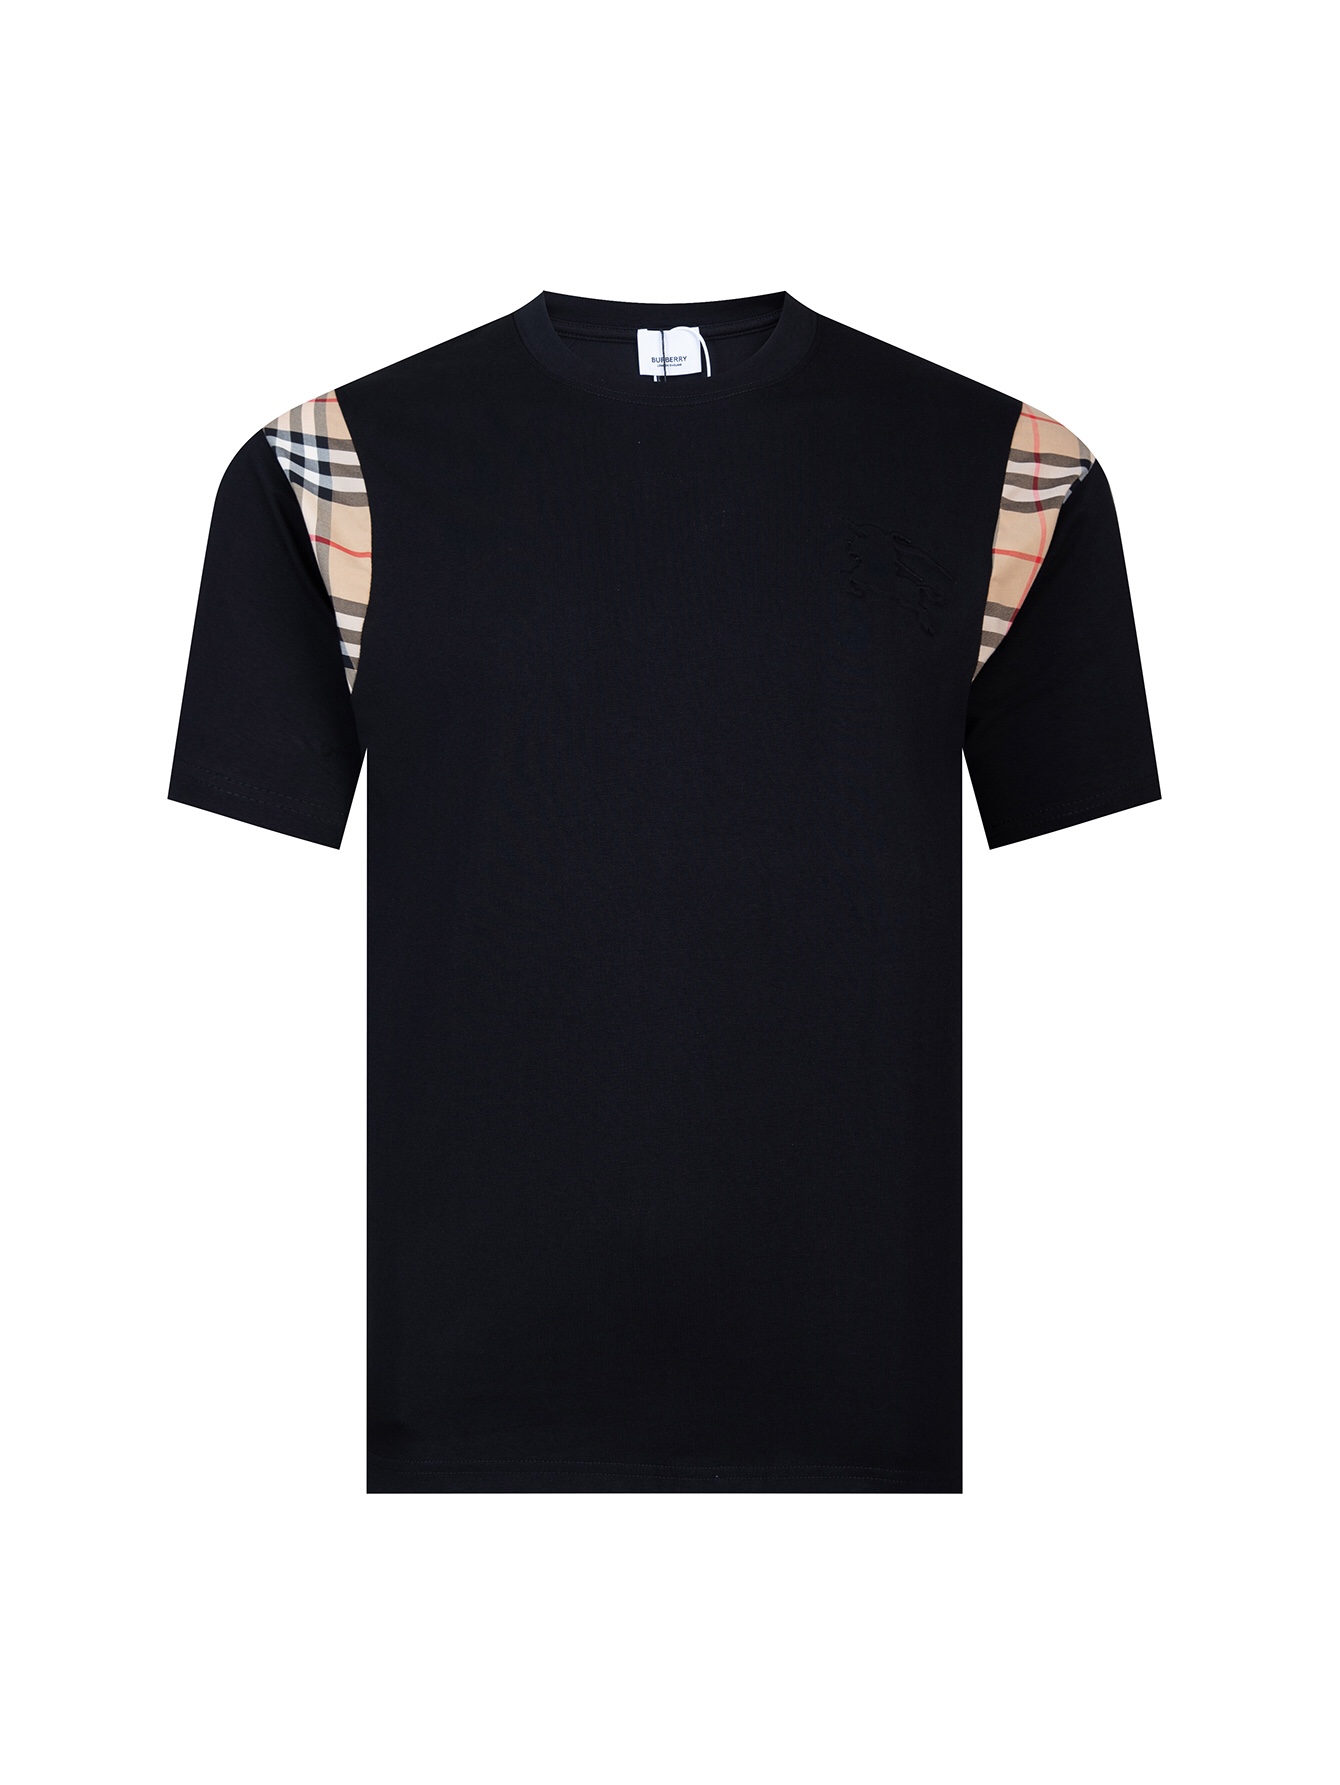 Burberry Clothing T-Shirt Black White Lattice Unisex Short Sleeve